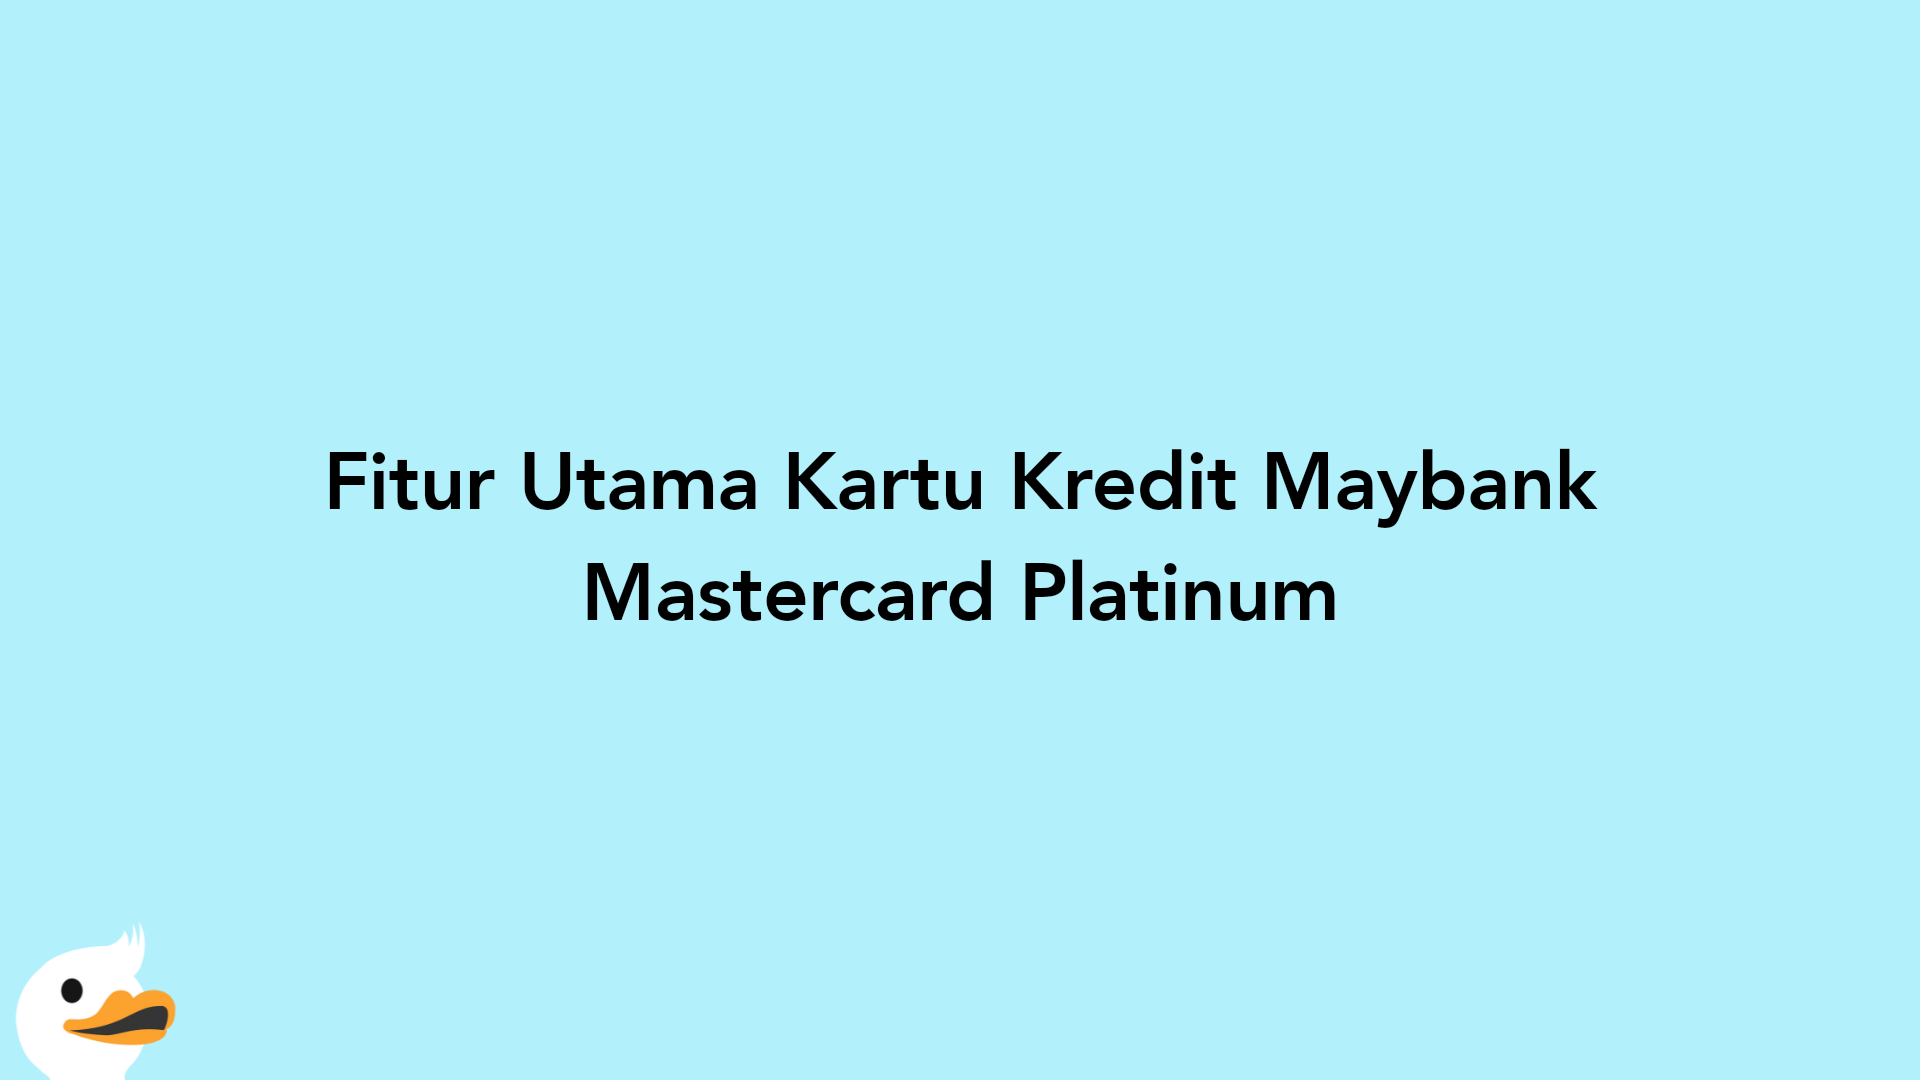 Fitur Utama Kartu Kredit Maybank Mastercard Platinum